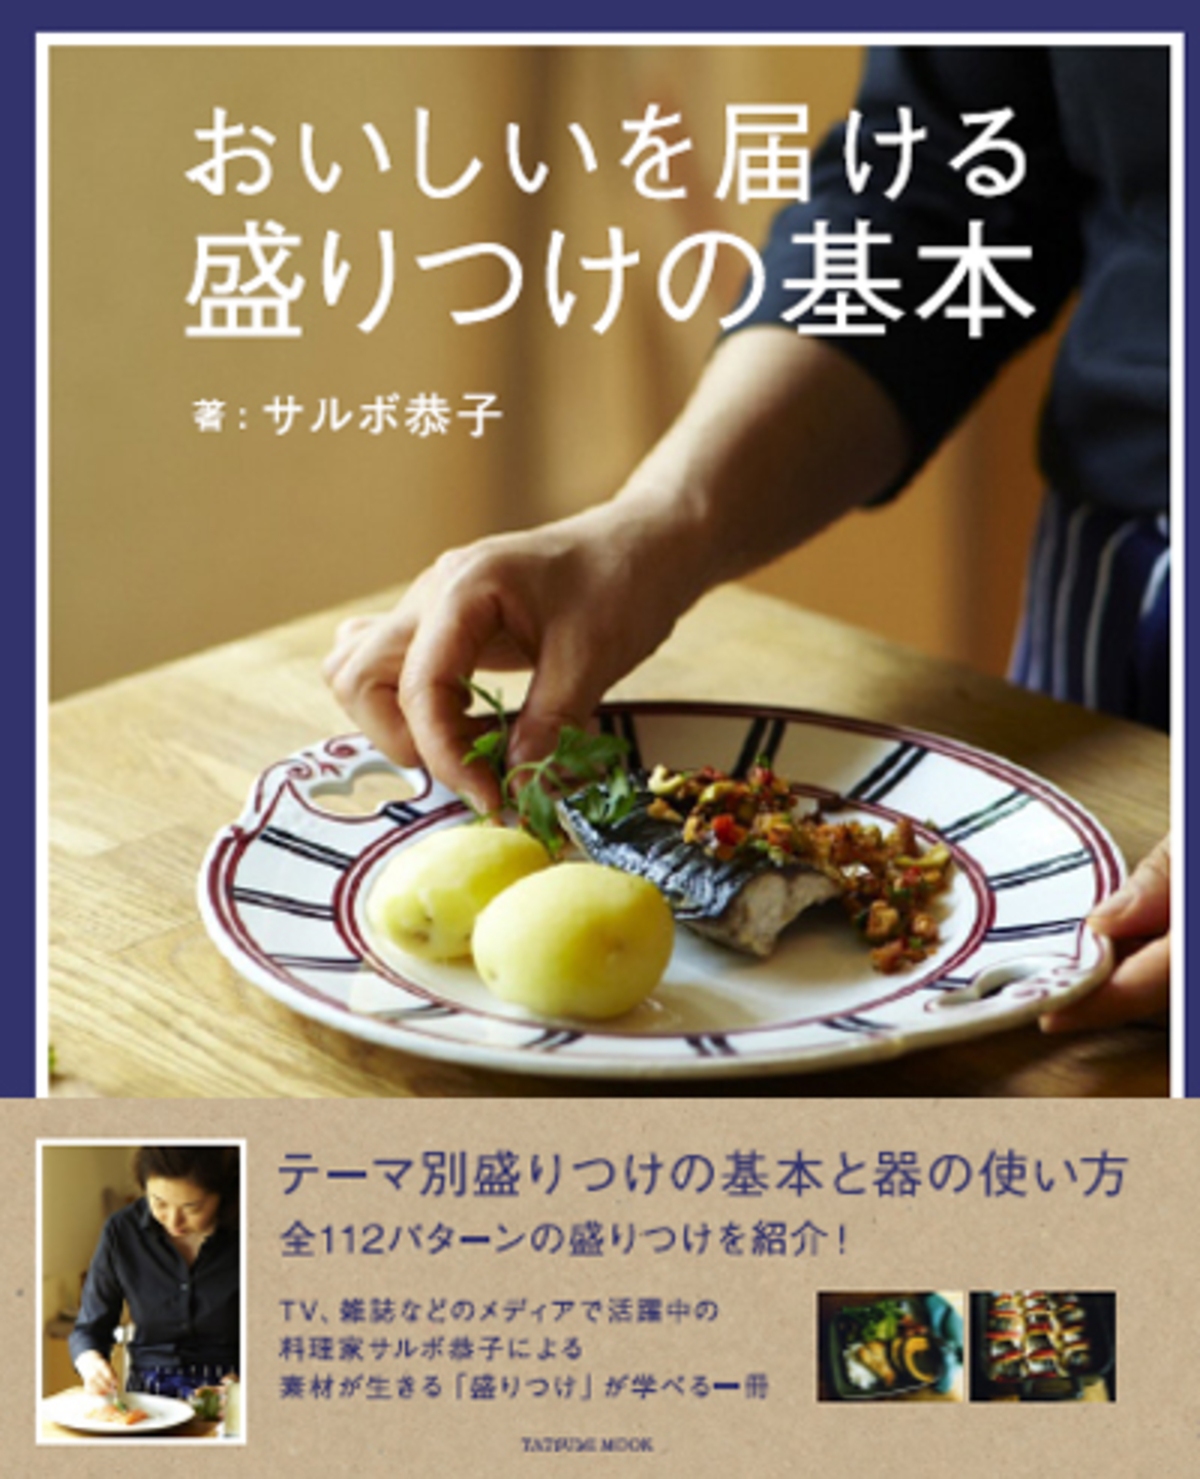 もう 盛りつけ に悩まない 料理家サルボ恭子さん新著 おいしいを届ける 盛りつけの基本 ウーマンエキサイト 2 2